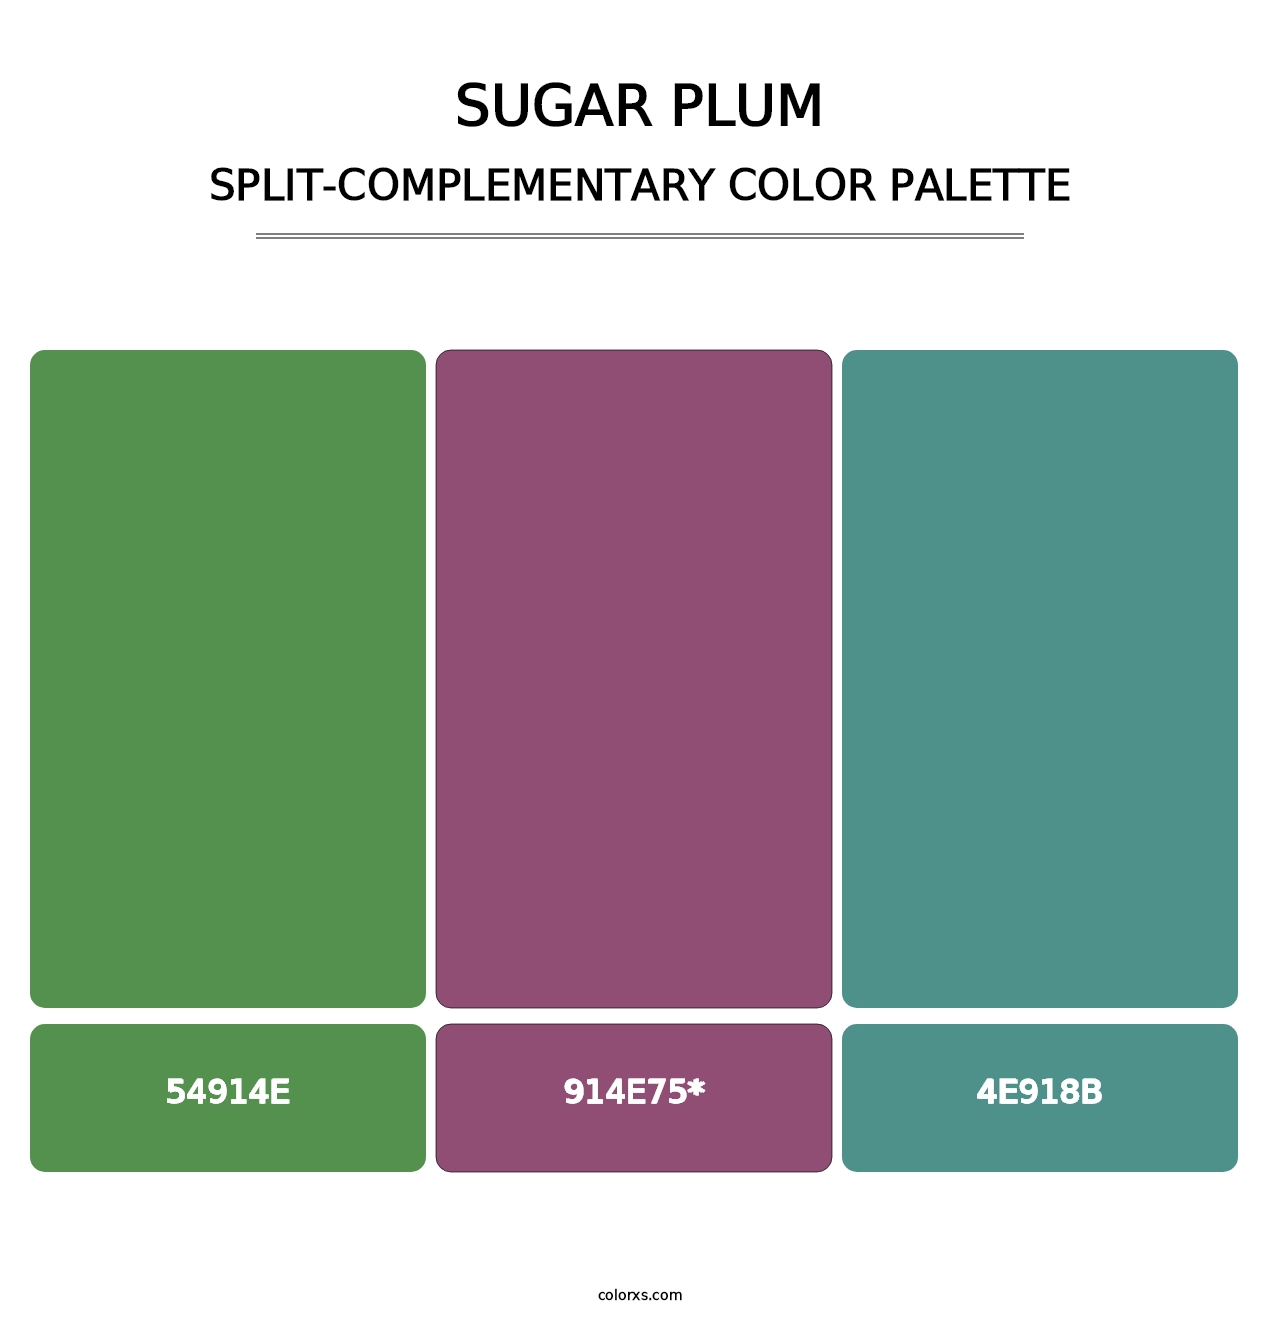 Sugar Plum - Split-Complementary Color Palette